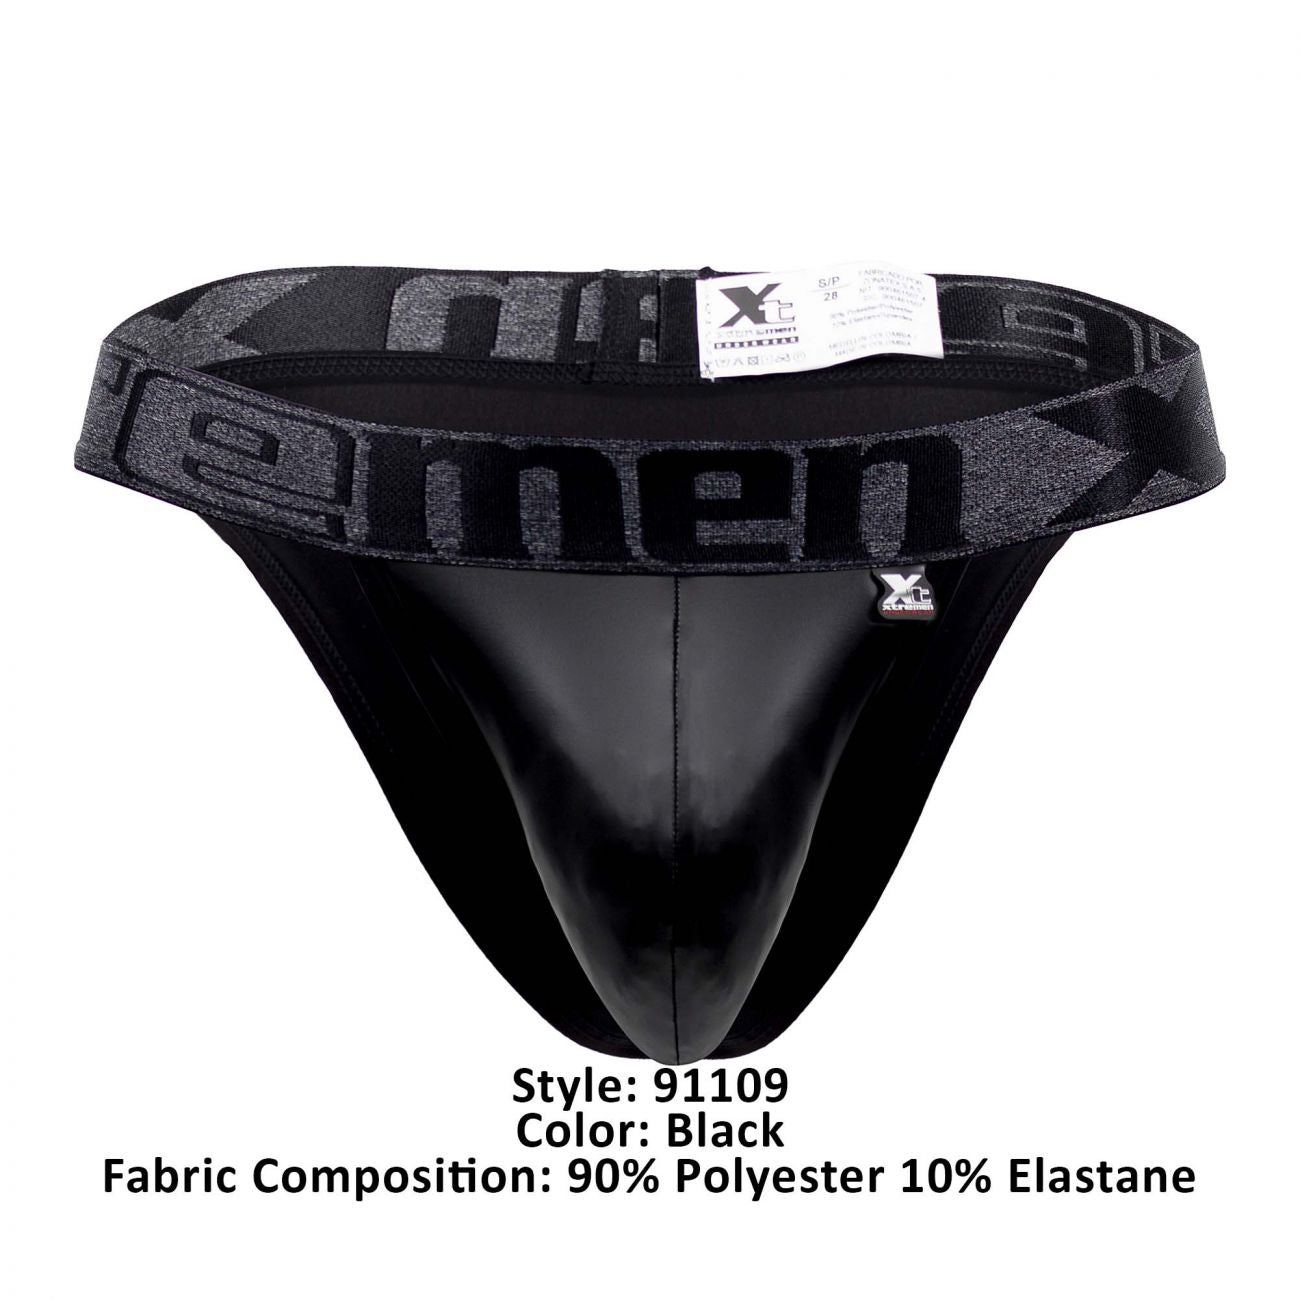 Xtremen 91109 Faux Leather Bikini Black